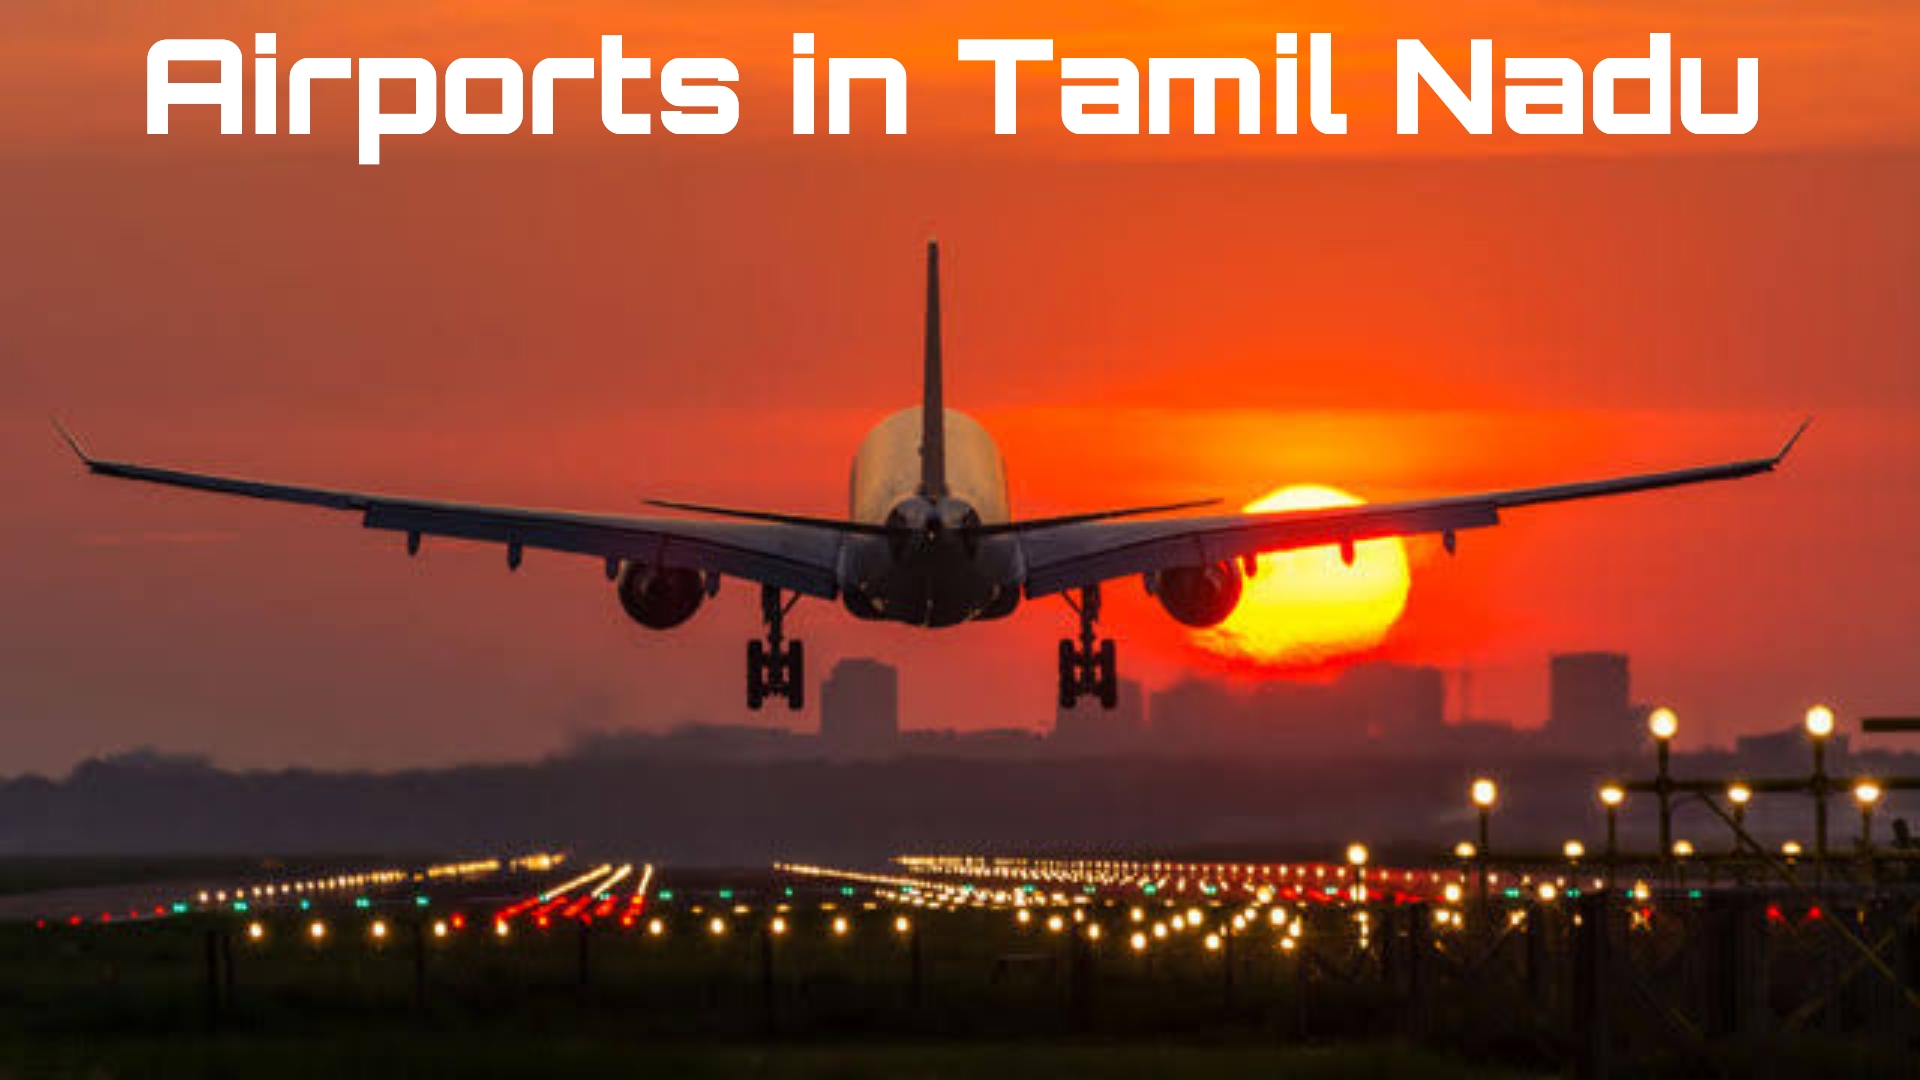 तमिलनाडु में कितने एयरपोर्ट हैं? How many airports in Tamil Nadu in 2022?